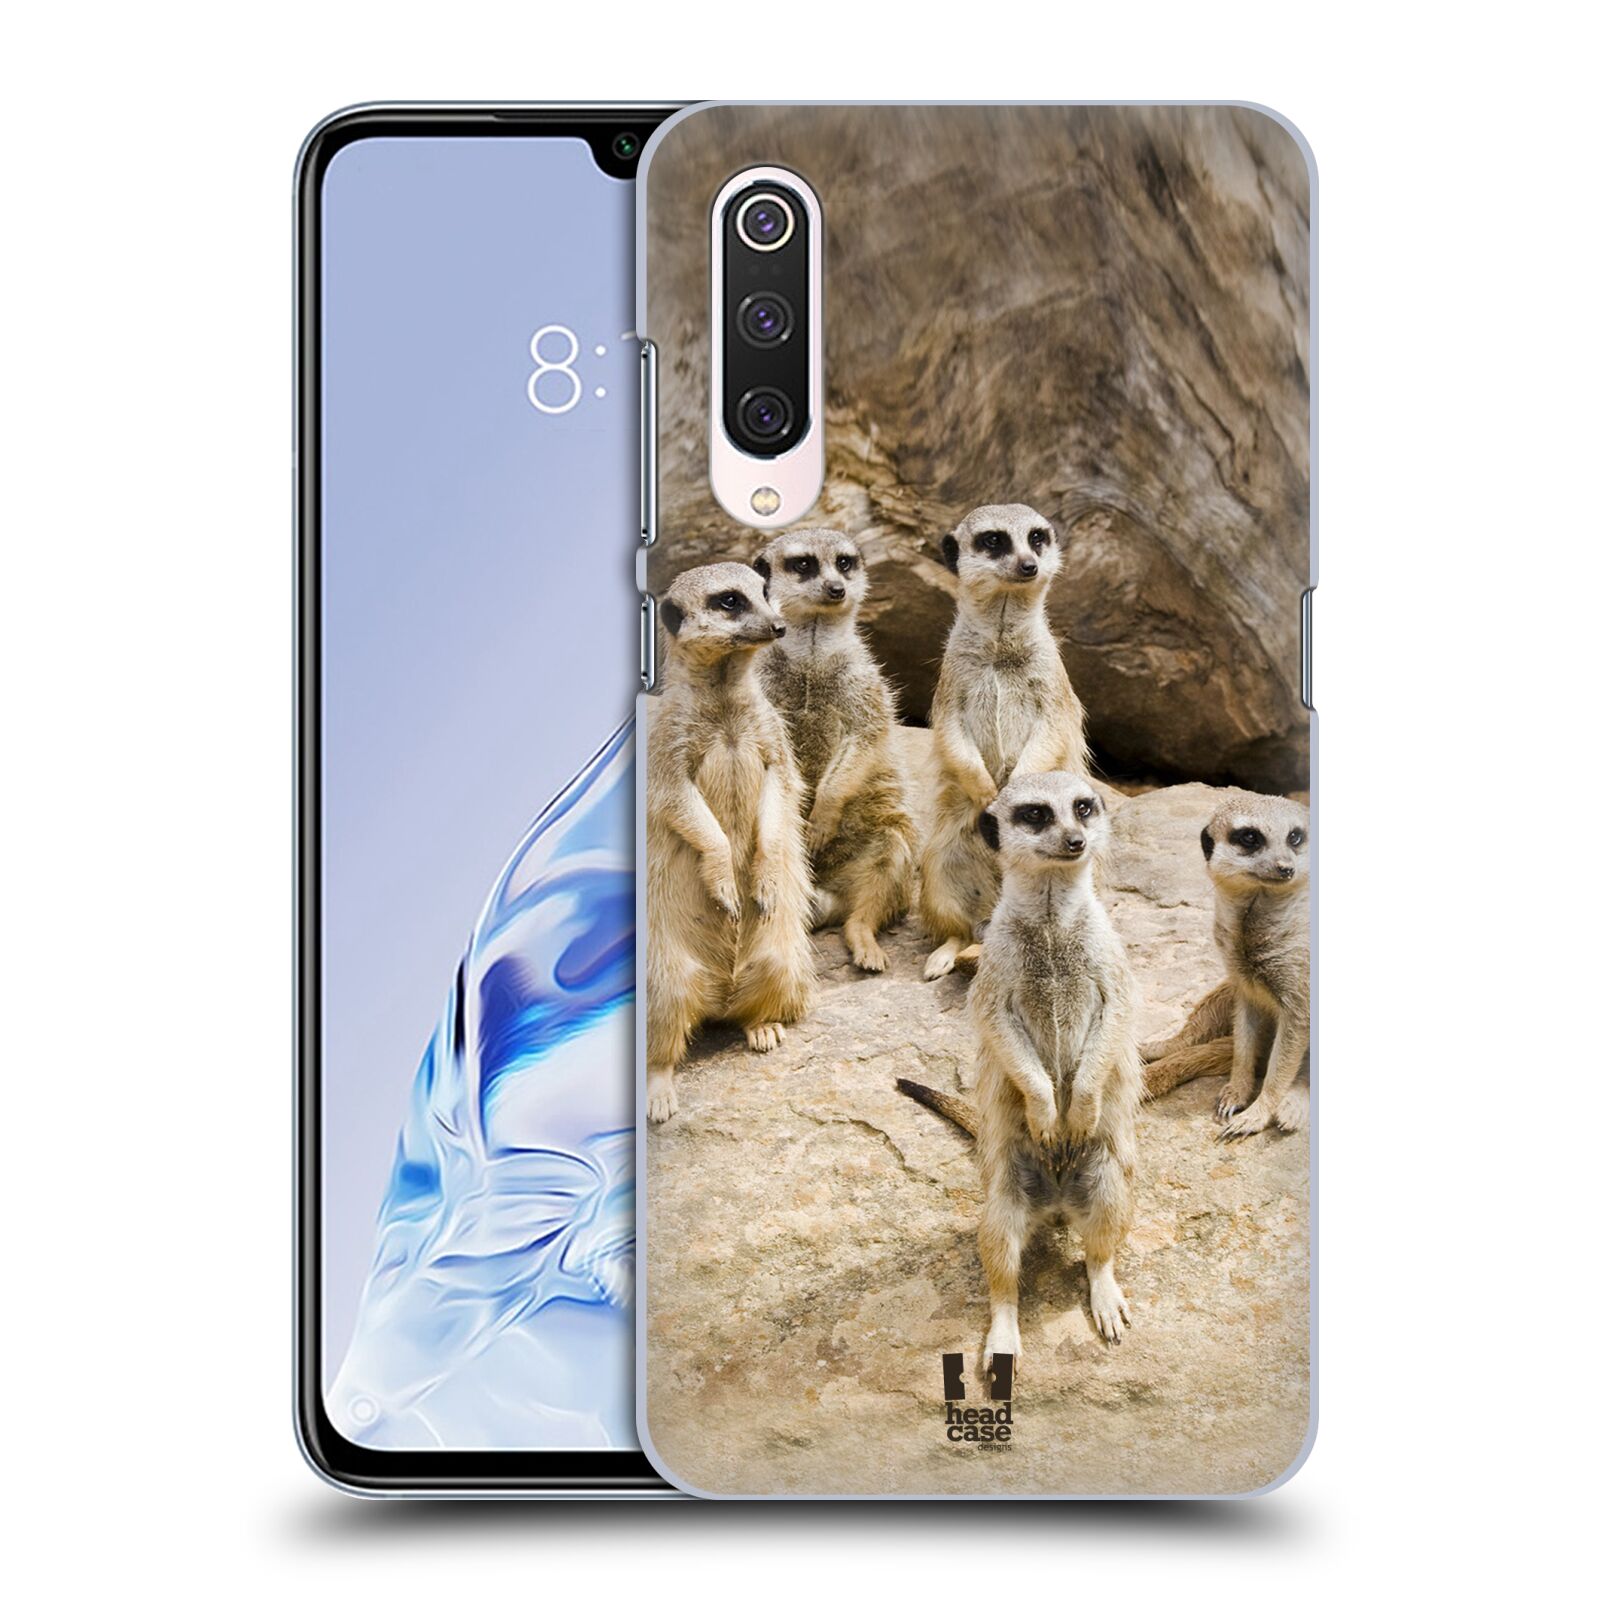 Zadní obal pro mobil Xiaomi Mi 9 PRO - HEAD CASE - Svět zvířat roztomilé surikaty